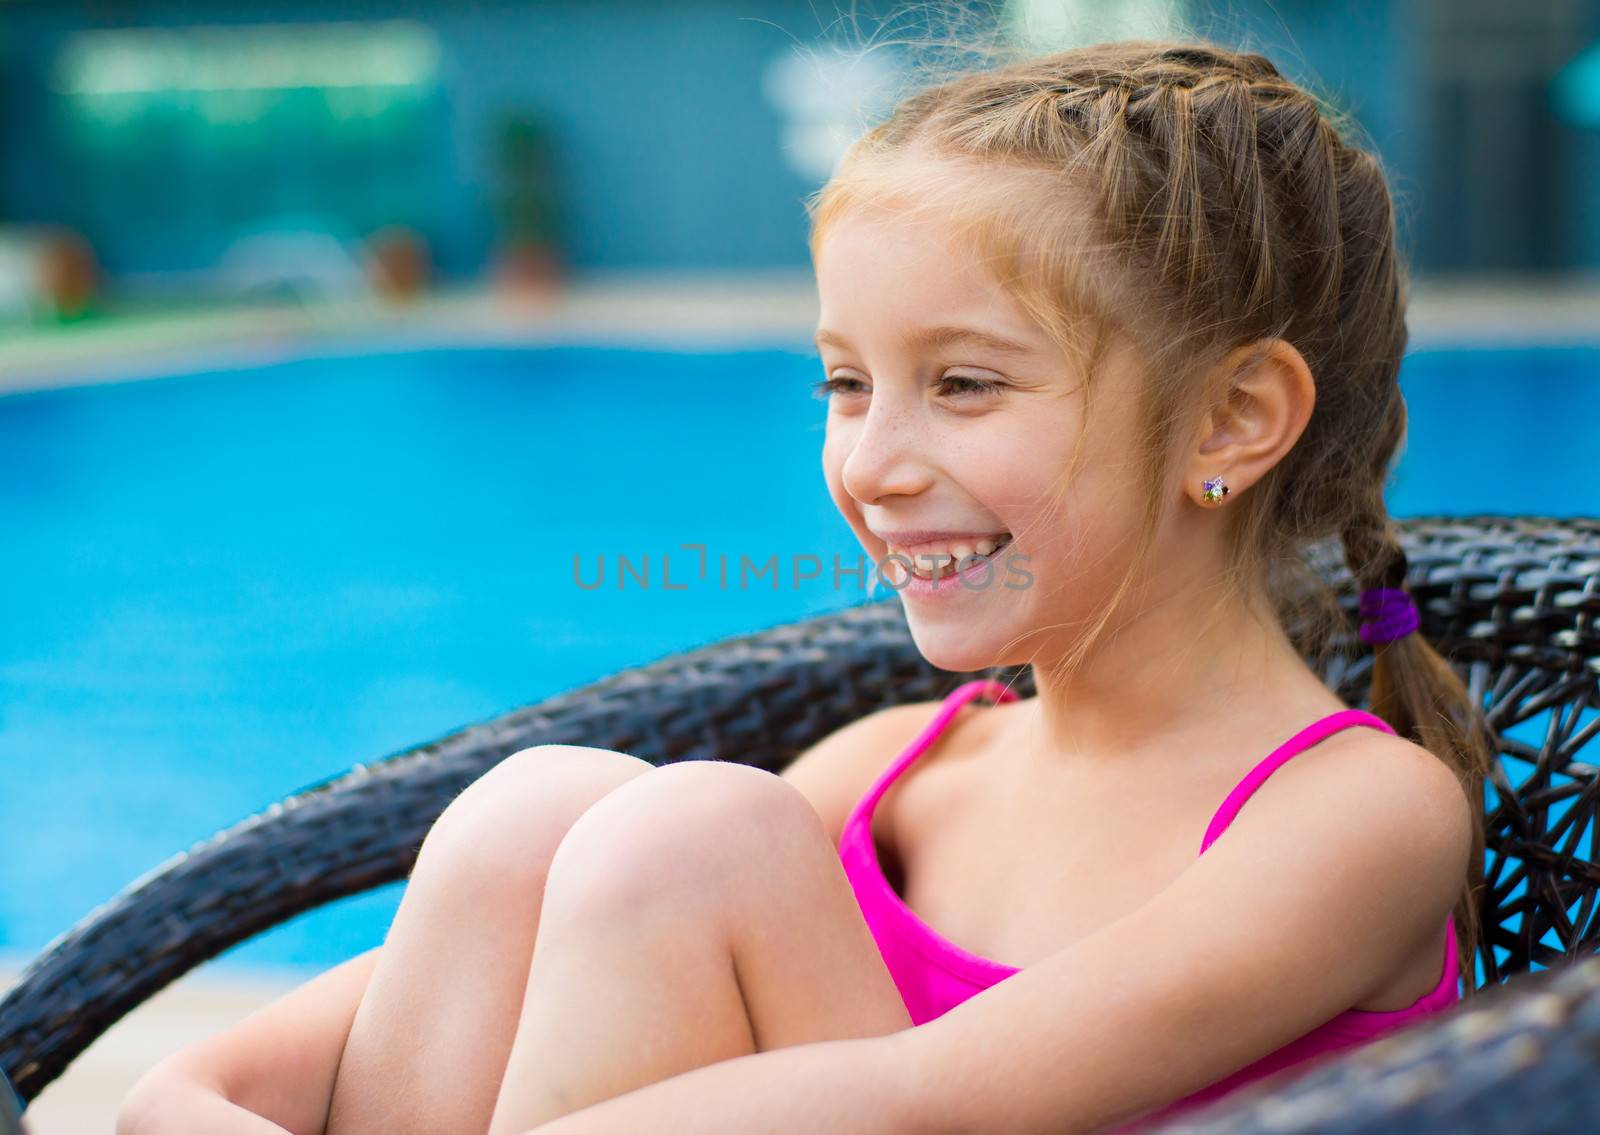 little girl near sweaming pool by GekaSkr